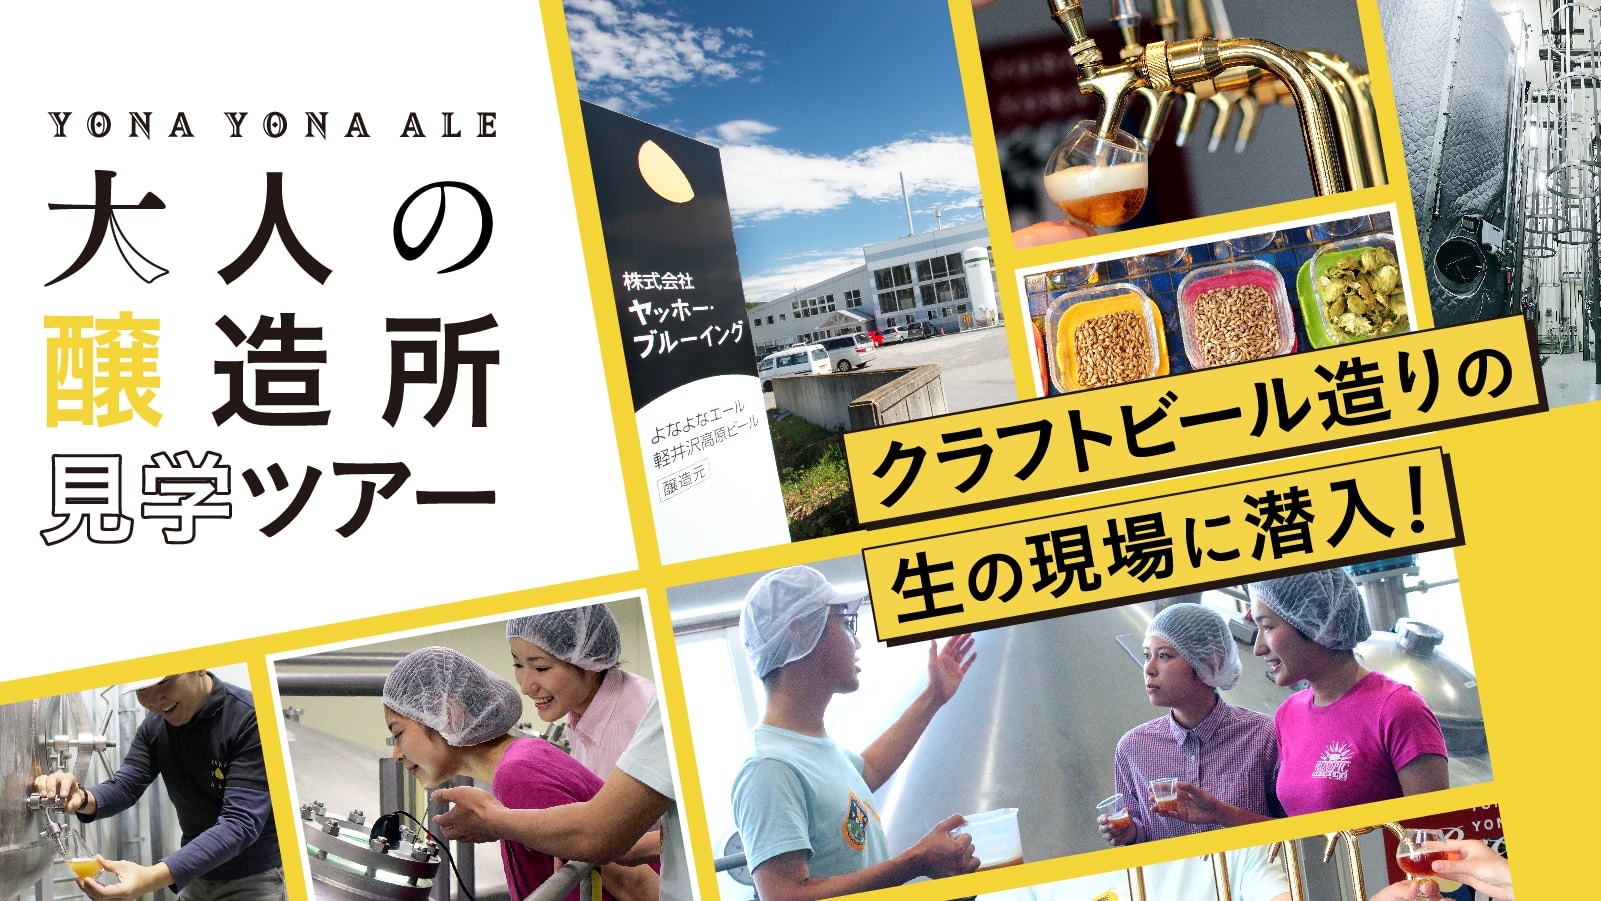 よなよなエール 大人の醸造所見学ツアー 工場見学 軽井沢 旅行 よなよなエール クラフトビール